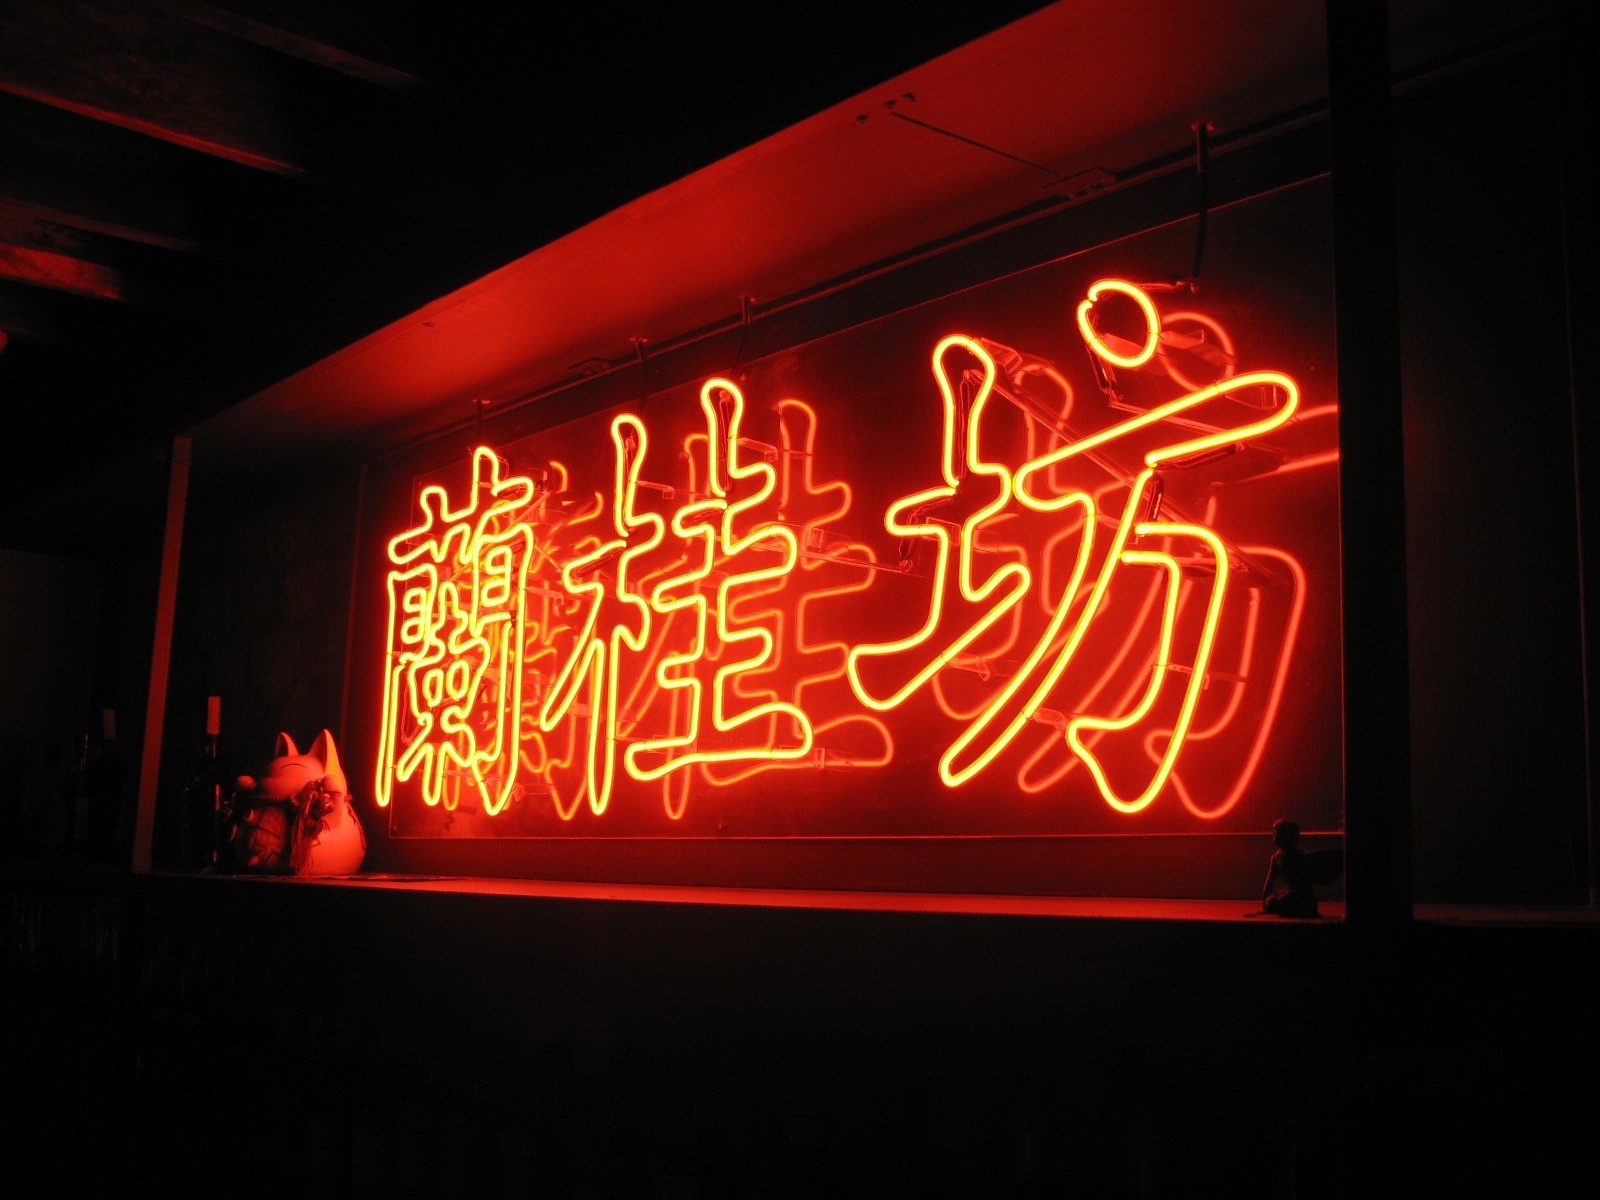 Lan Kwai Speakeasy's iconic neon sign